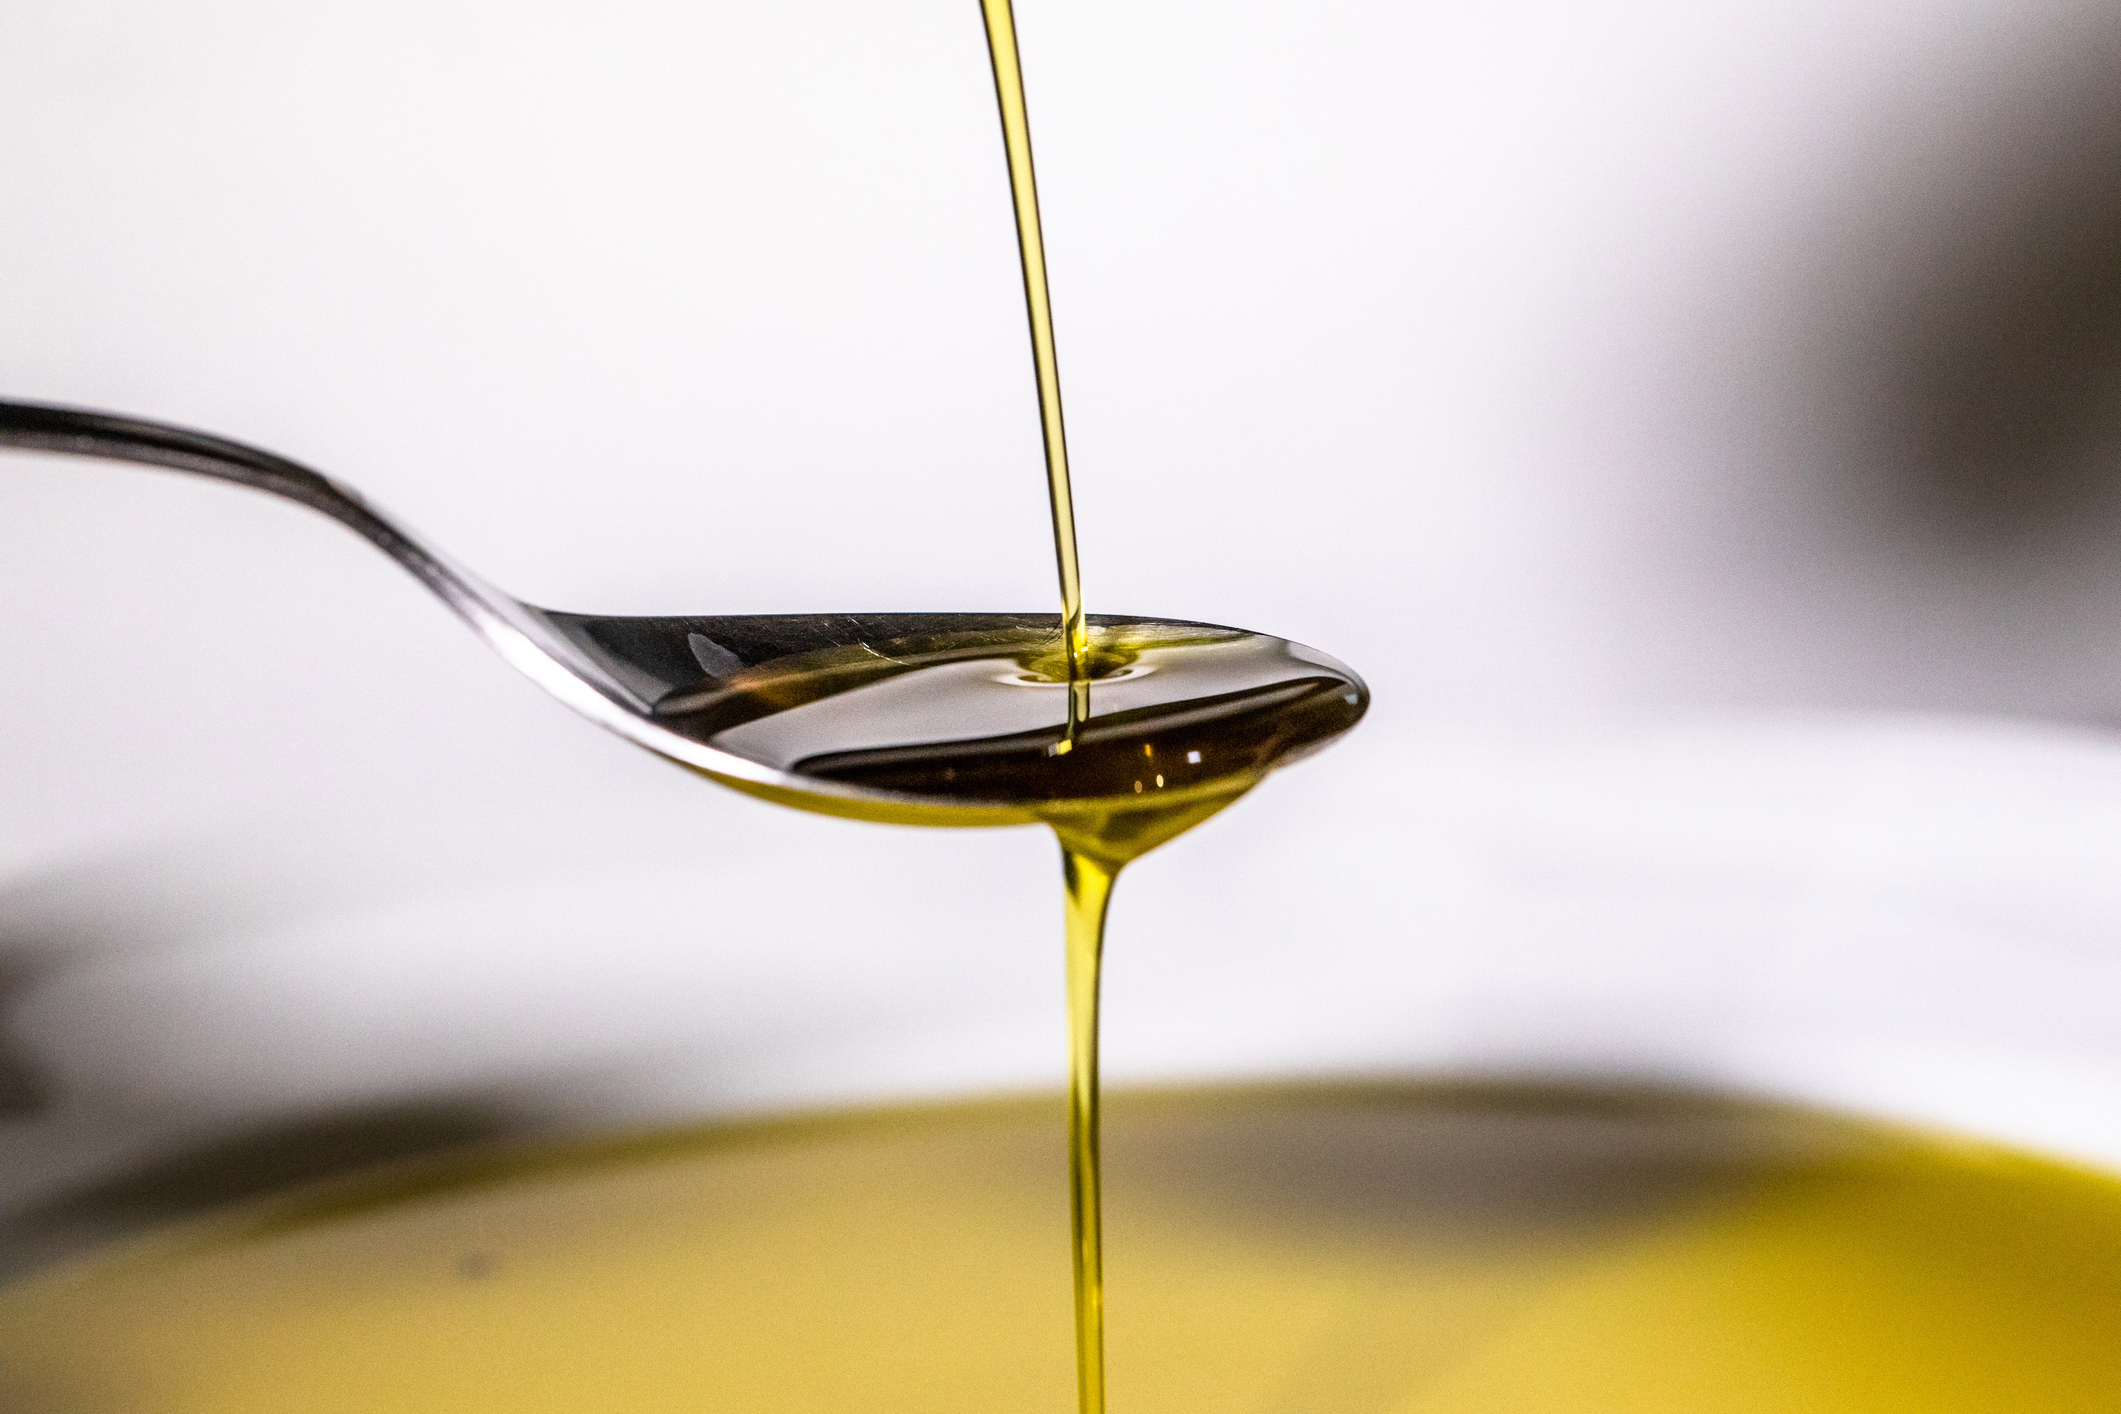 uno de los supermercados más conocidos escandaliza a sus clientes por el precio del aceite de oliva de marca blanca